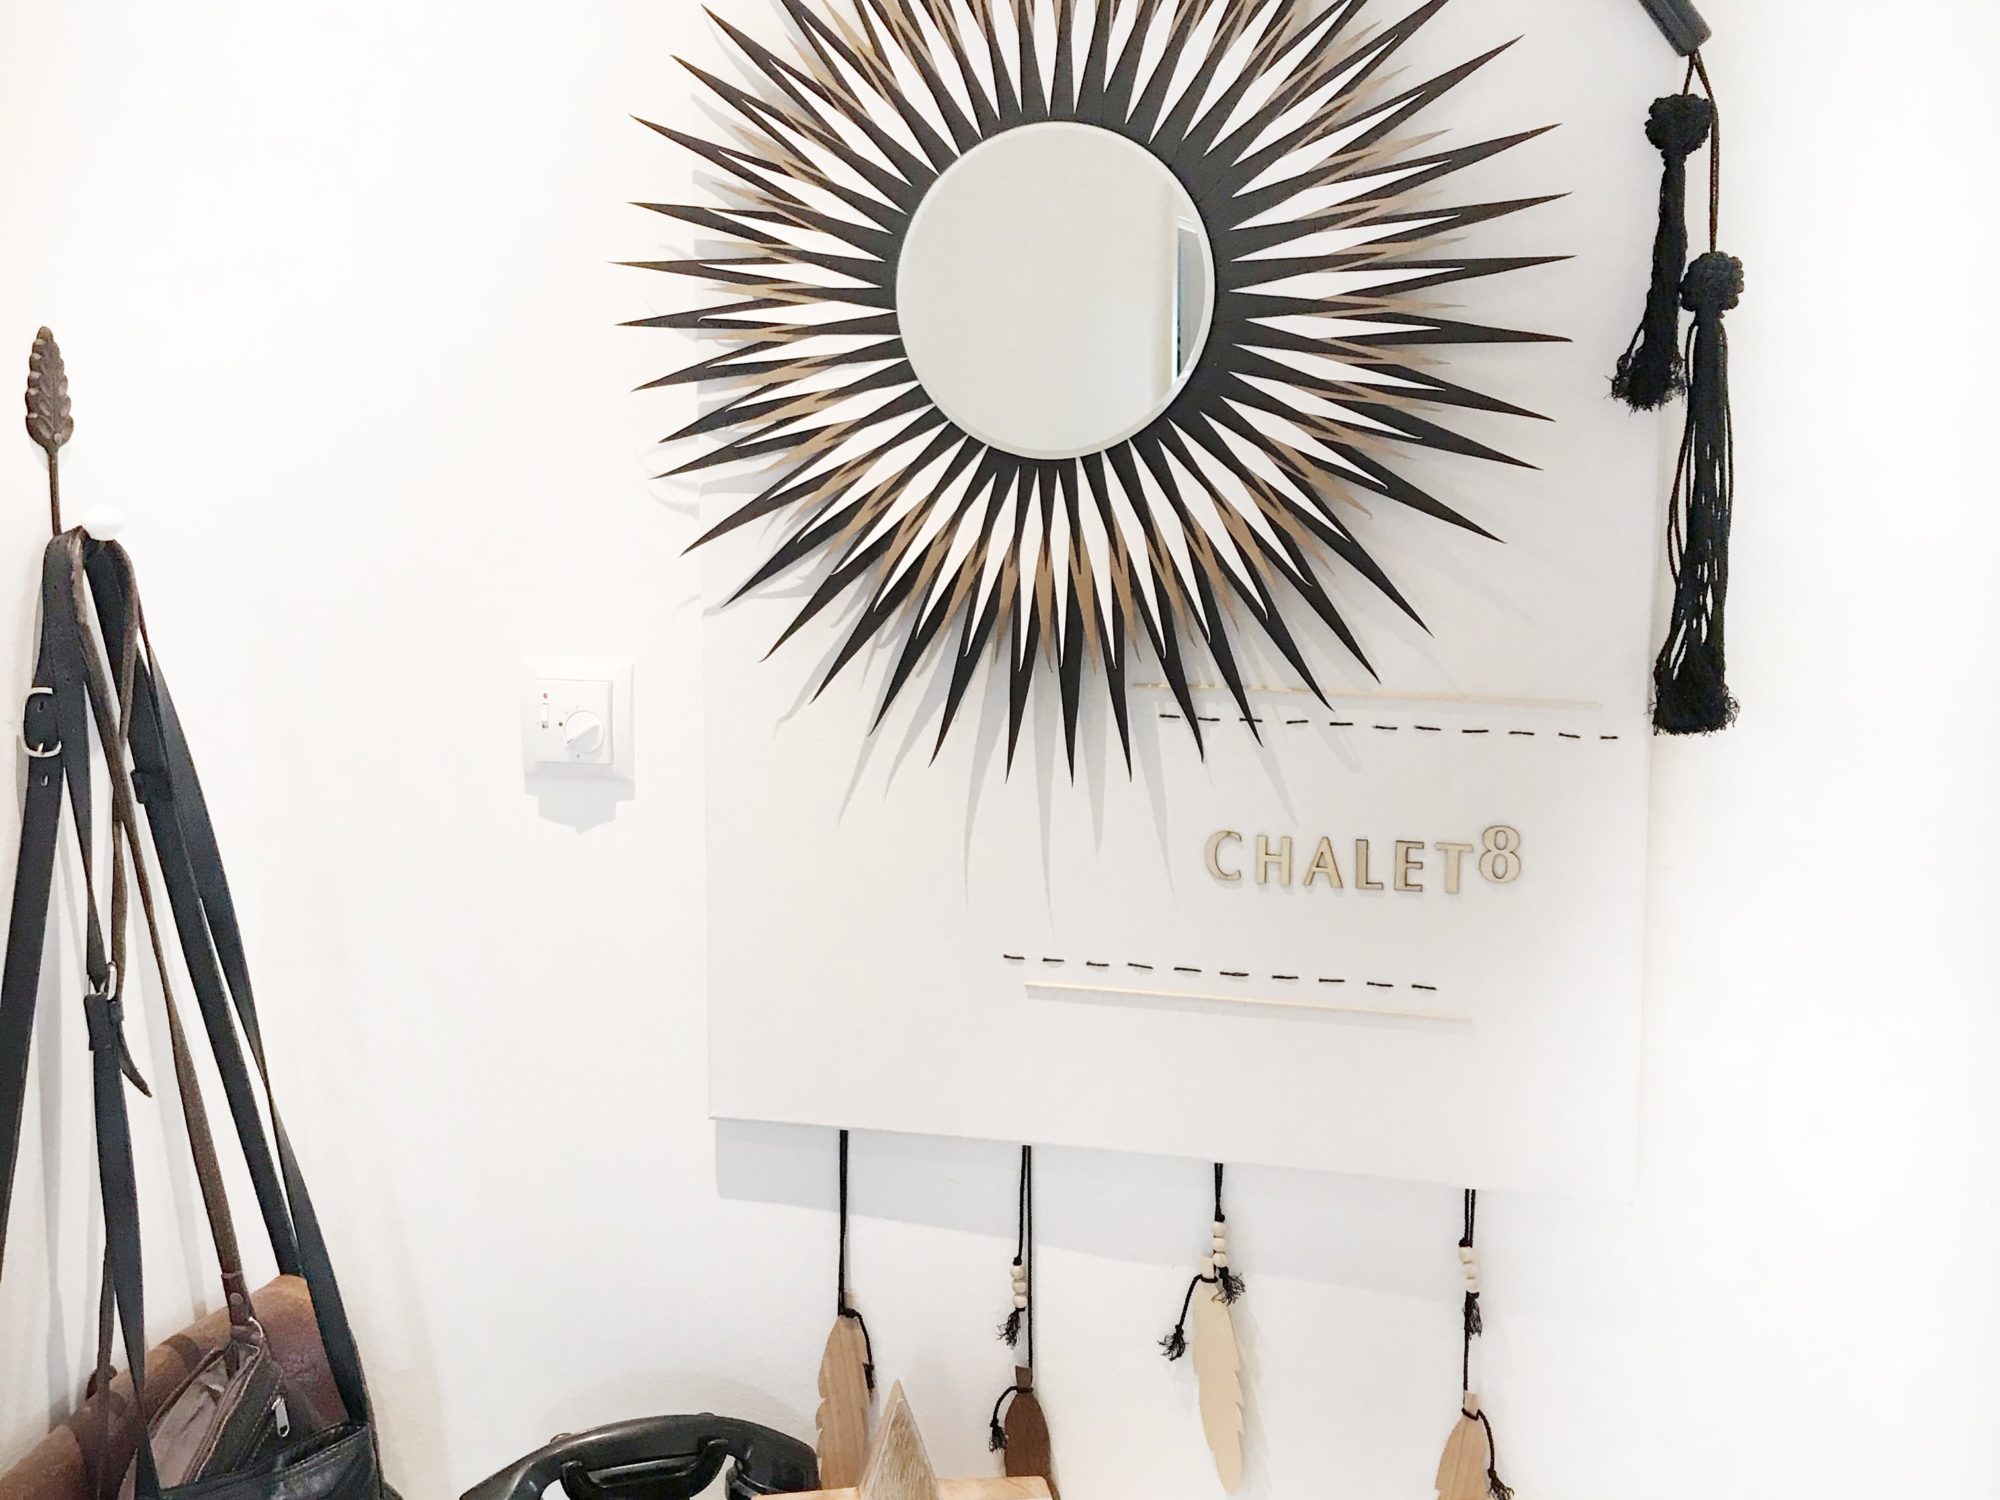 Chalet8 DIY Sonnenspiegel. Runden Spiegel mit Tonpapier verschönern. Wandspiegel selber basteln. Boho Style Spiegel. Boho Deko für die Wand #Wandspiegel #Sonnenspiegel #Chalet8